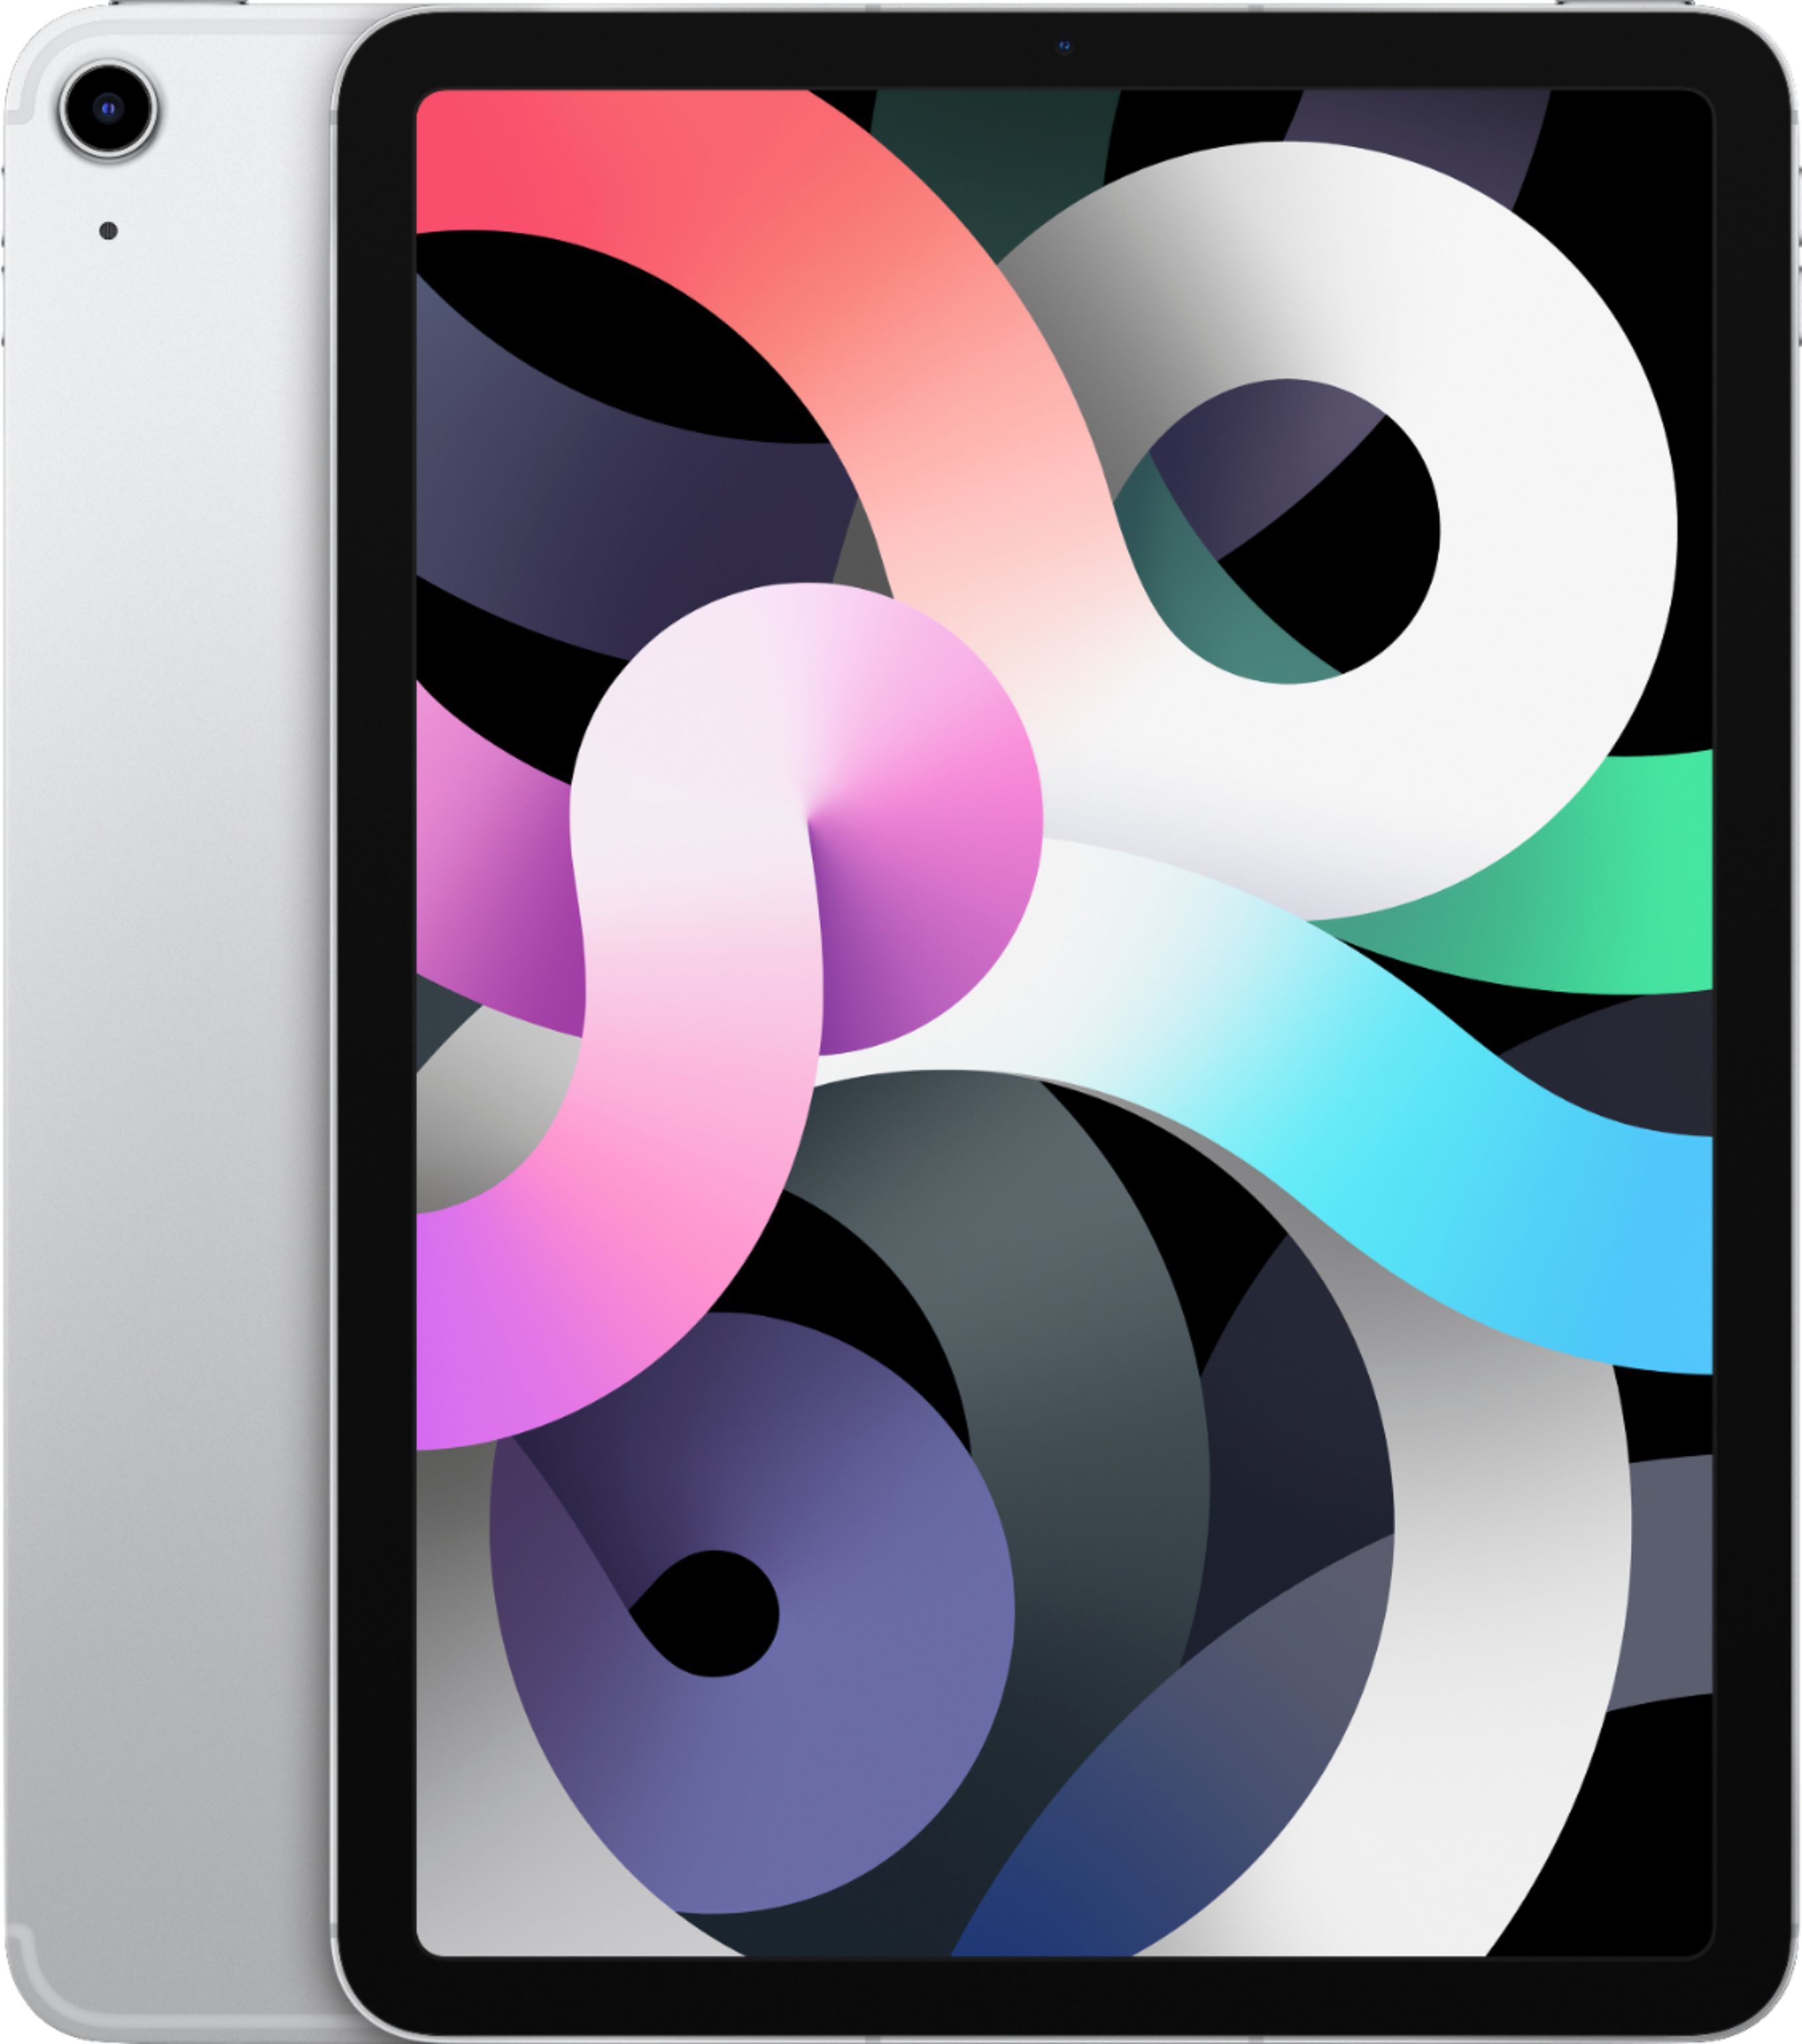 ポッキリ価格セール 【おまけ付】iPad Air4 Wi-Fiモデル 256GB タブレット